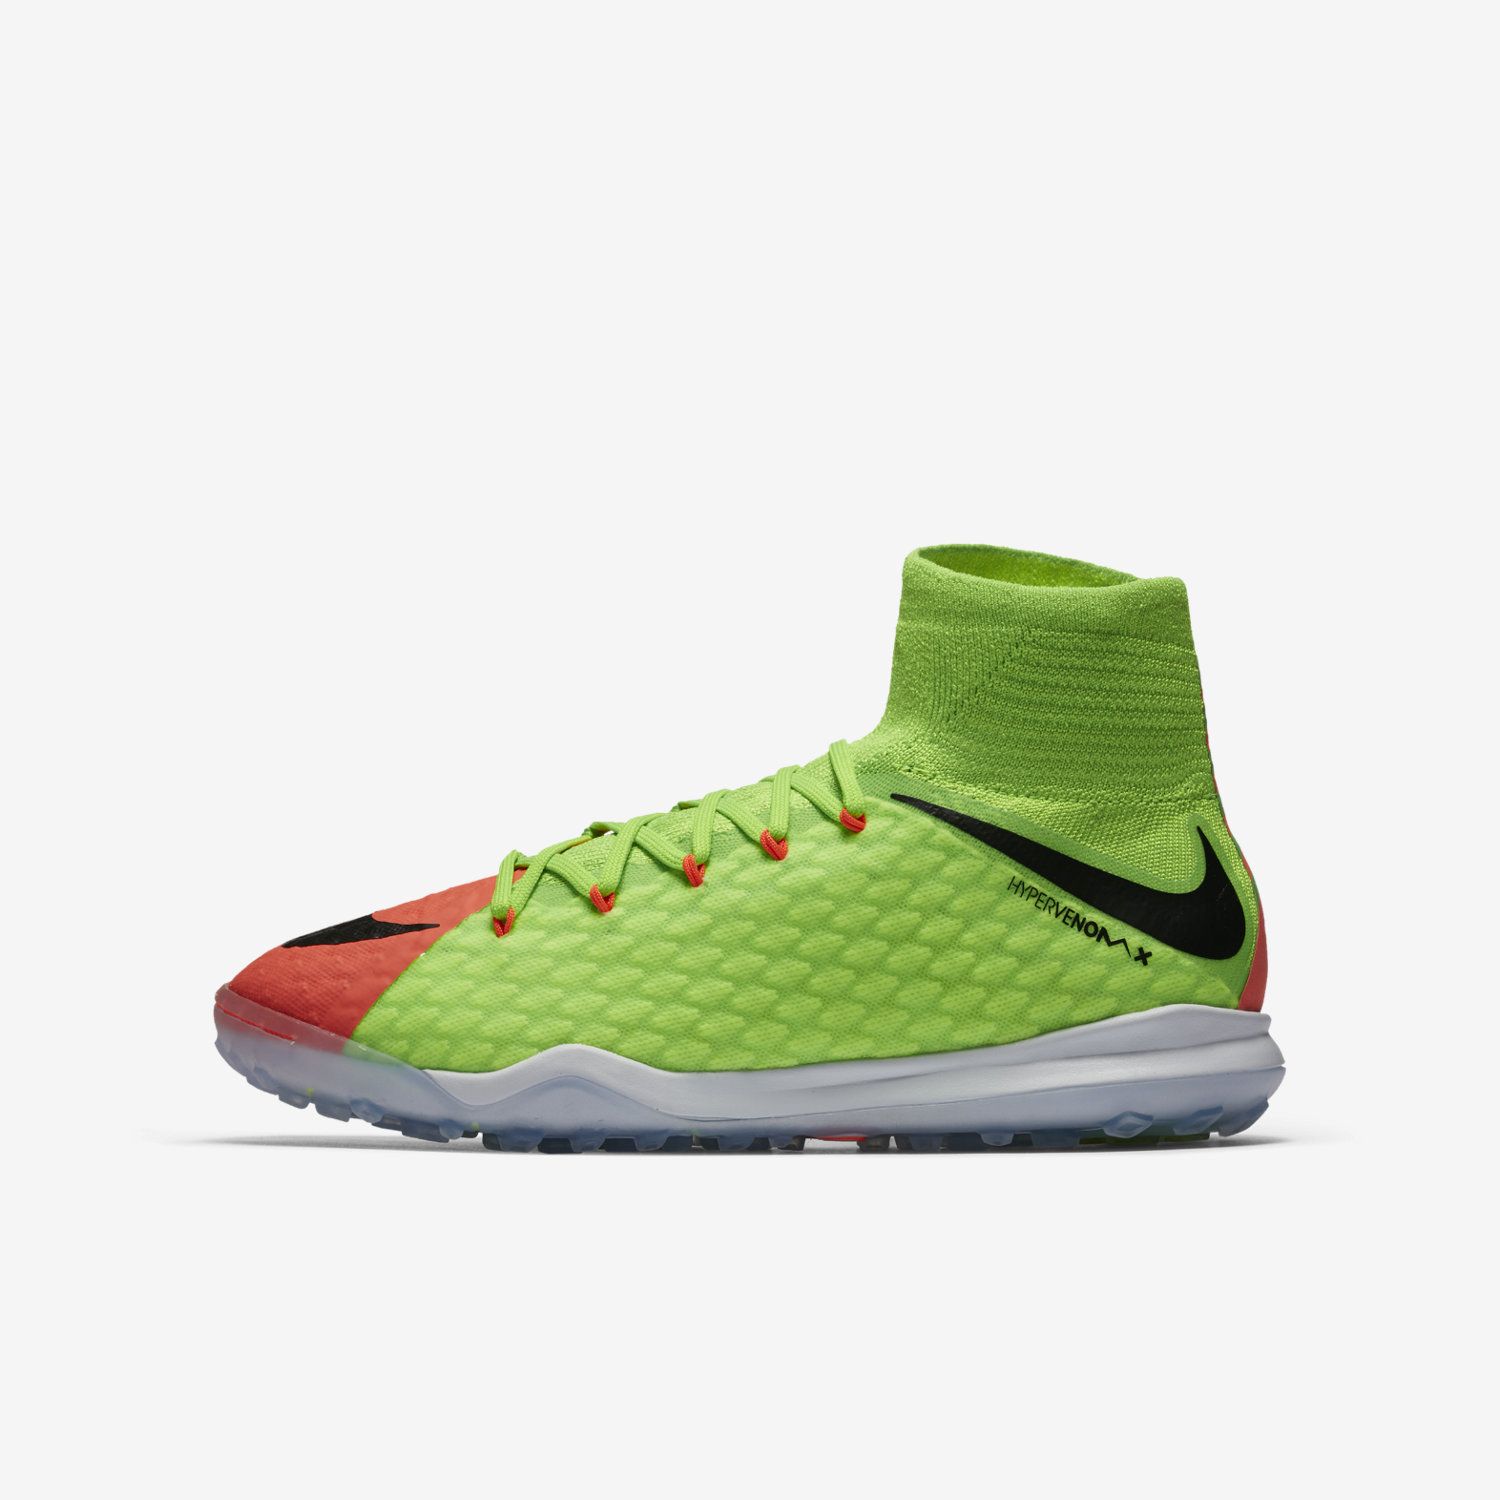 ποδοσφαιρικα παπουτσια για αγορια Nike Jr. HypervenomX Proximo II Dynamic Fit TF πρασινο/πορτοκαλι/μ